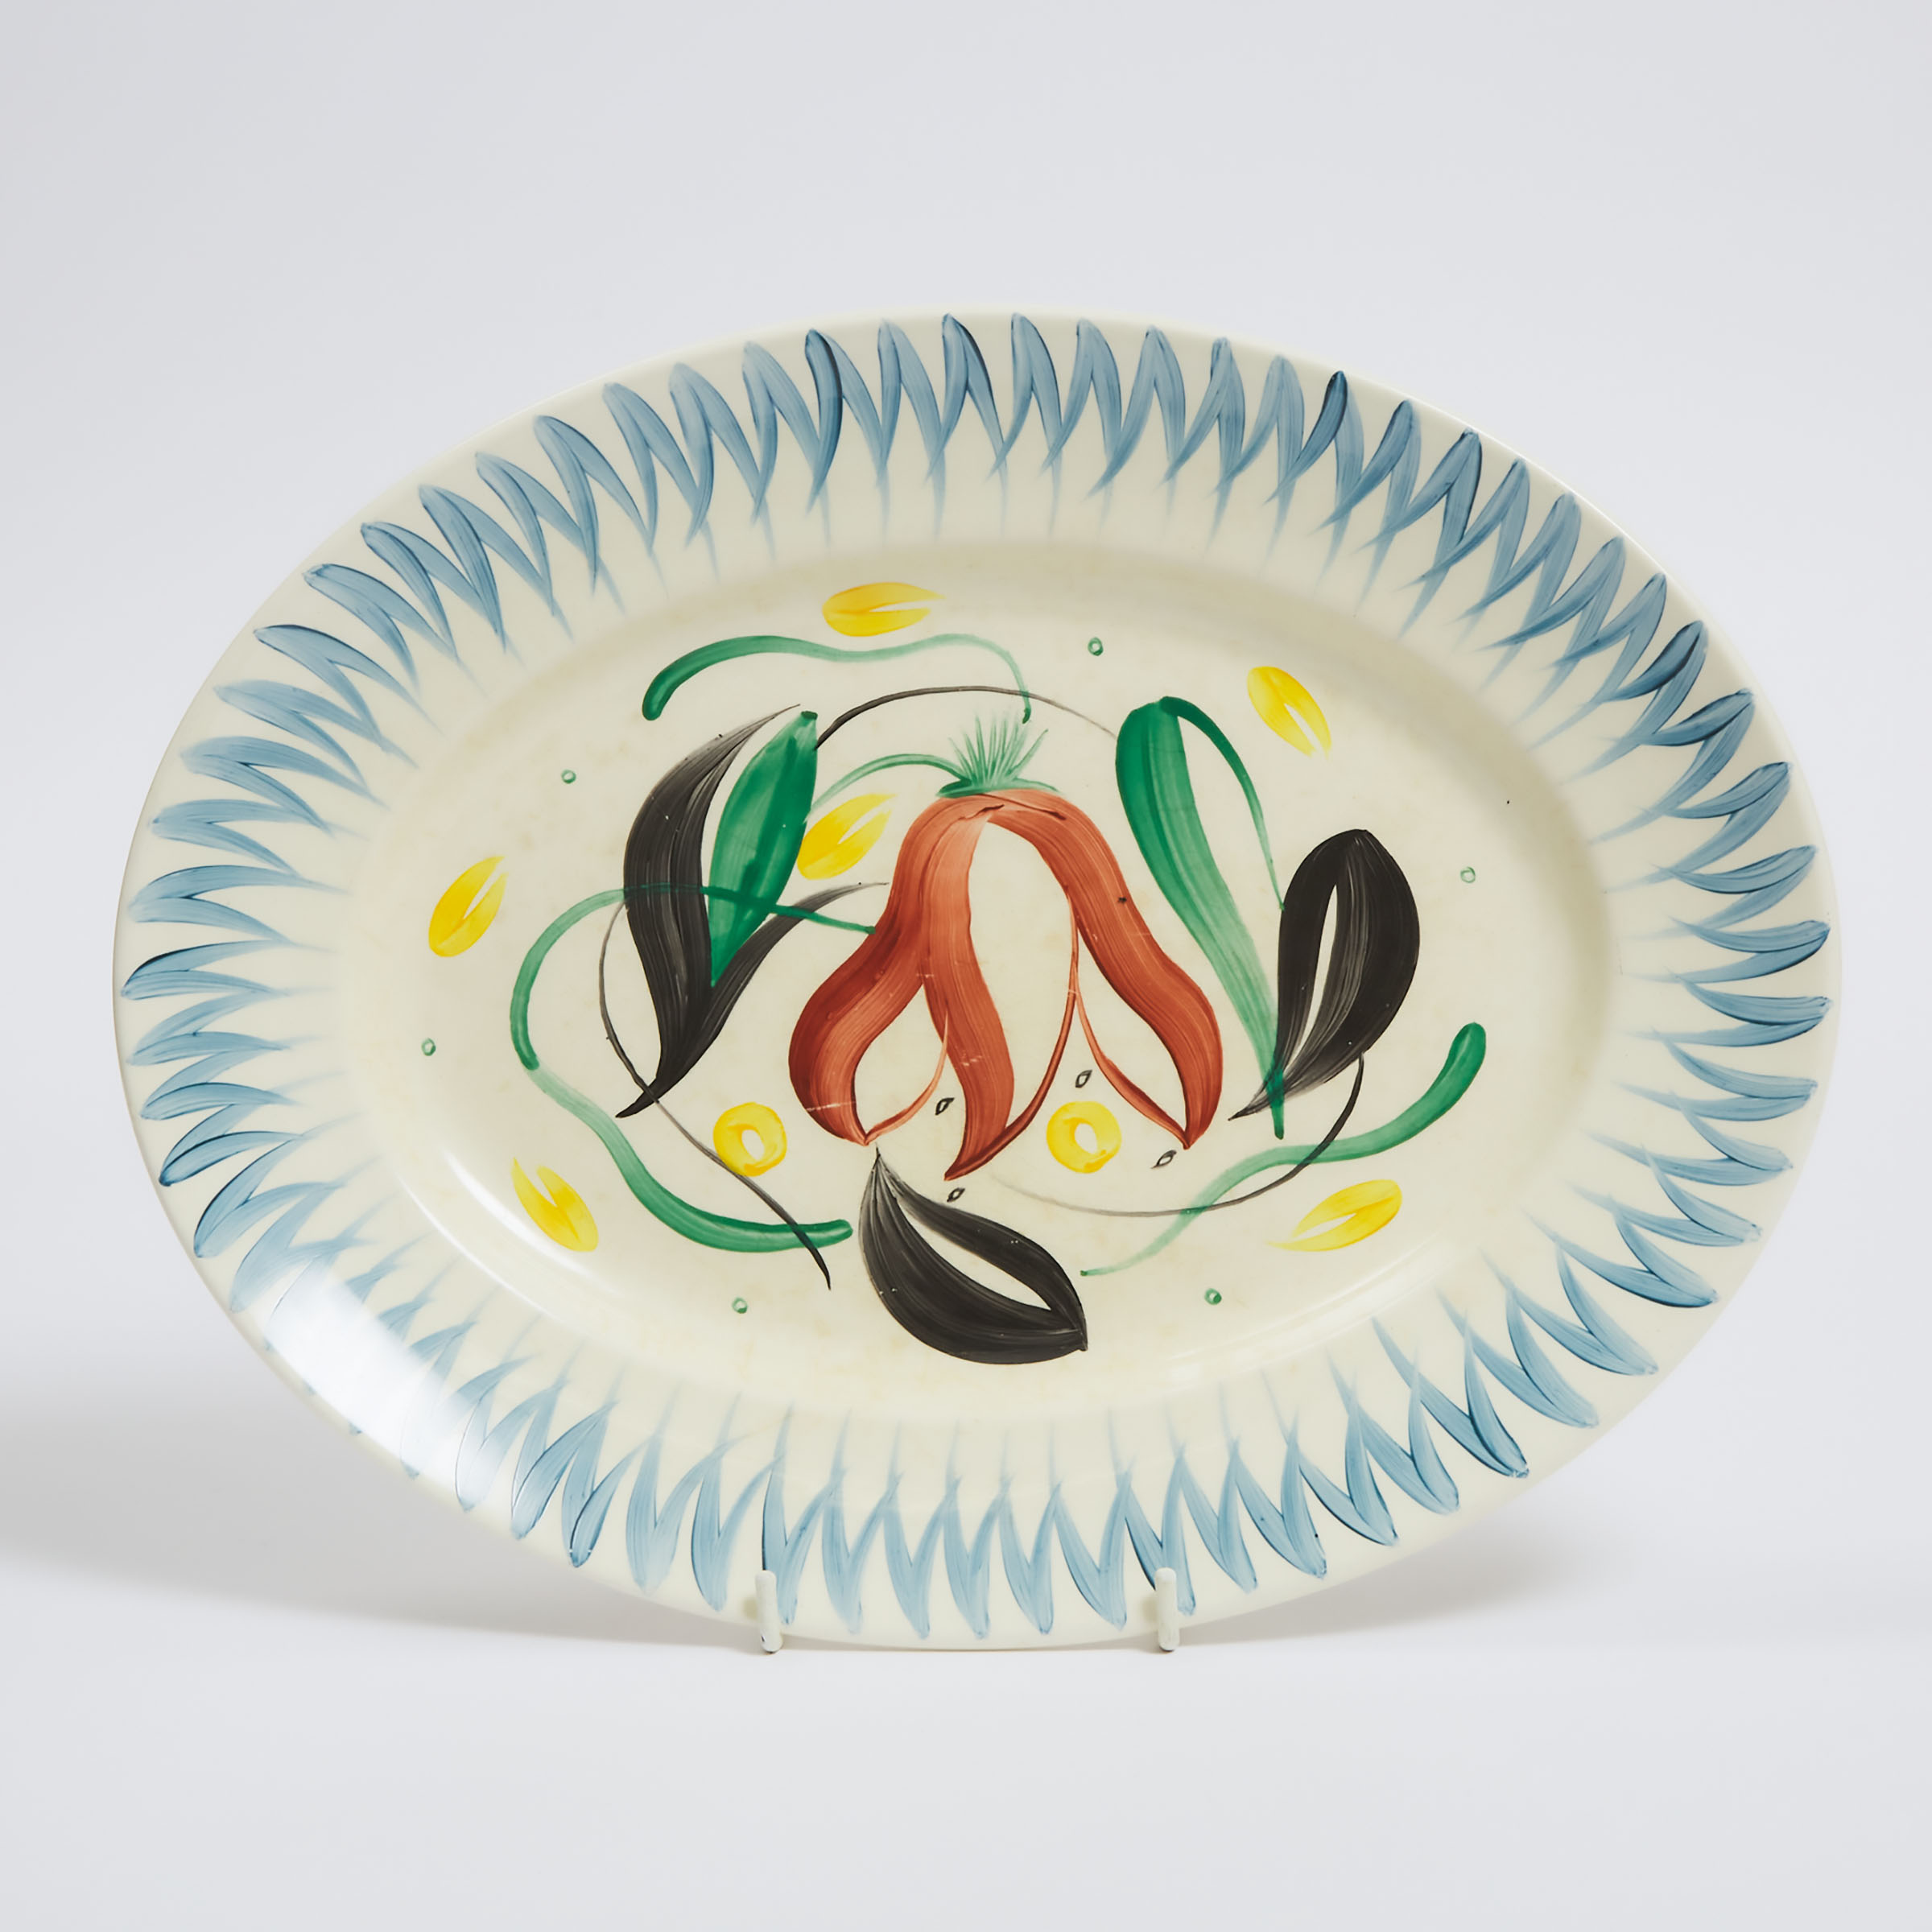 Susie Cooper (British, 1902-1995), Oval Platter, 1949